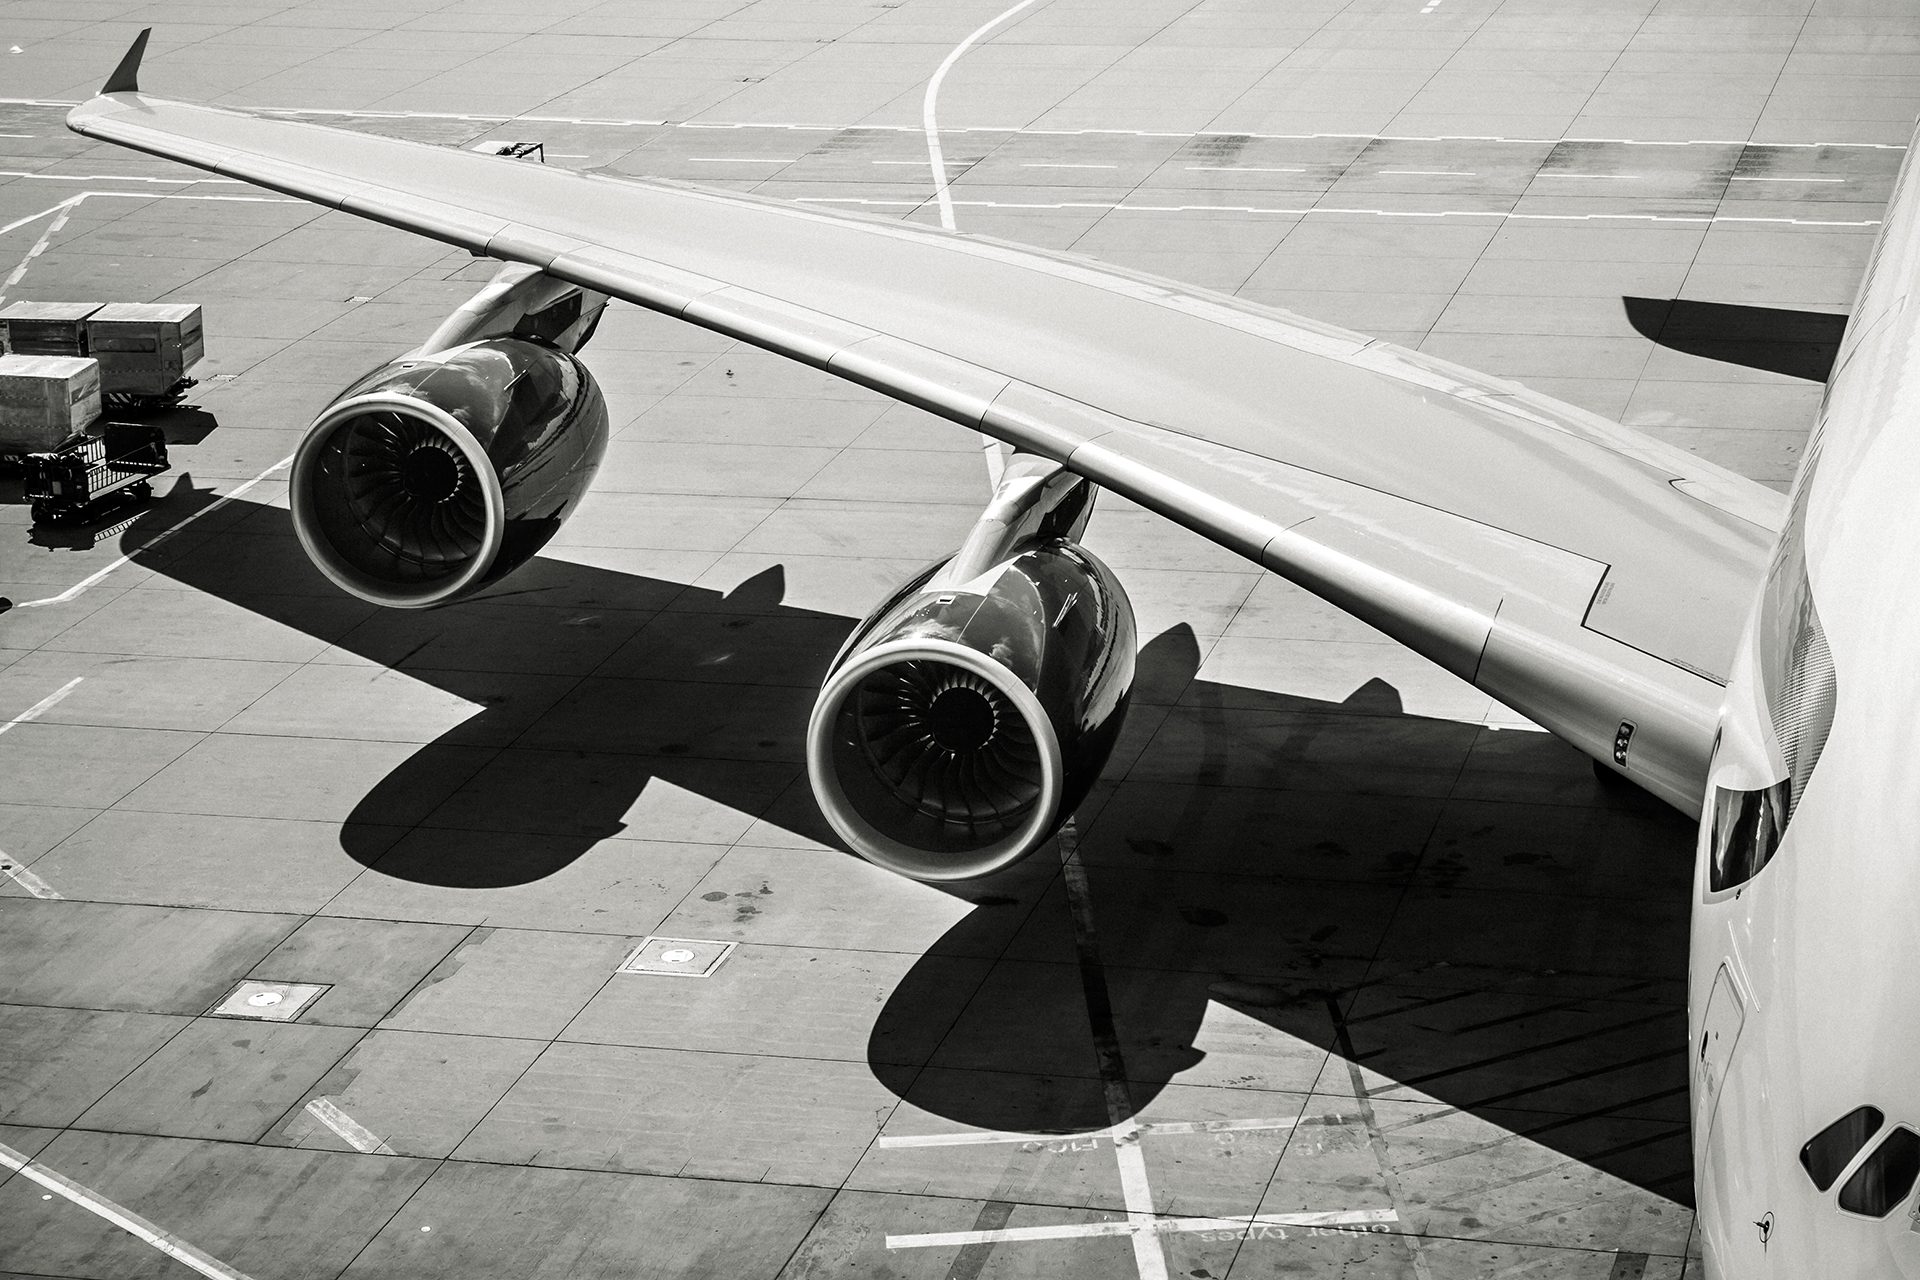 Auxílio do BNDES às companhias aéreas cai para R$ 4 bilhões